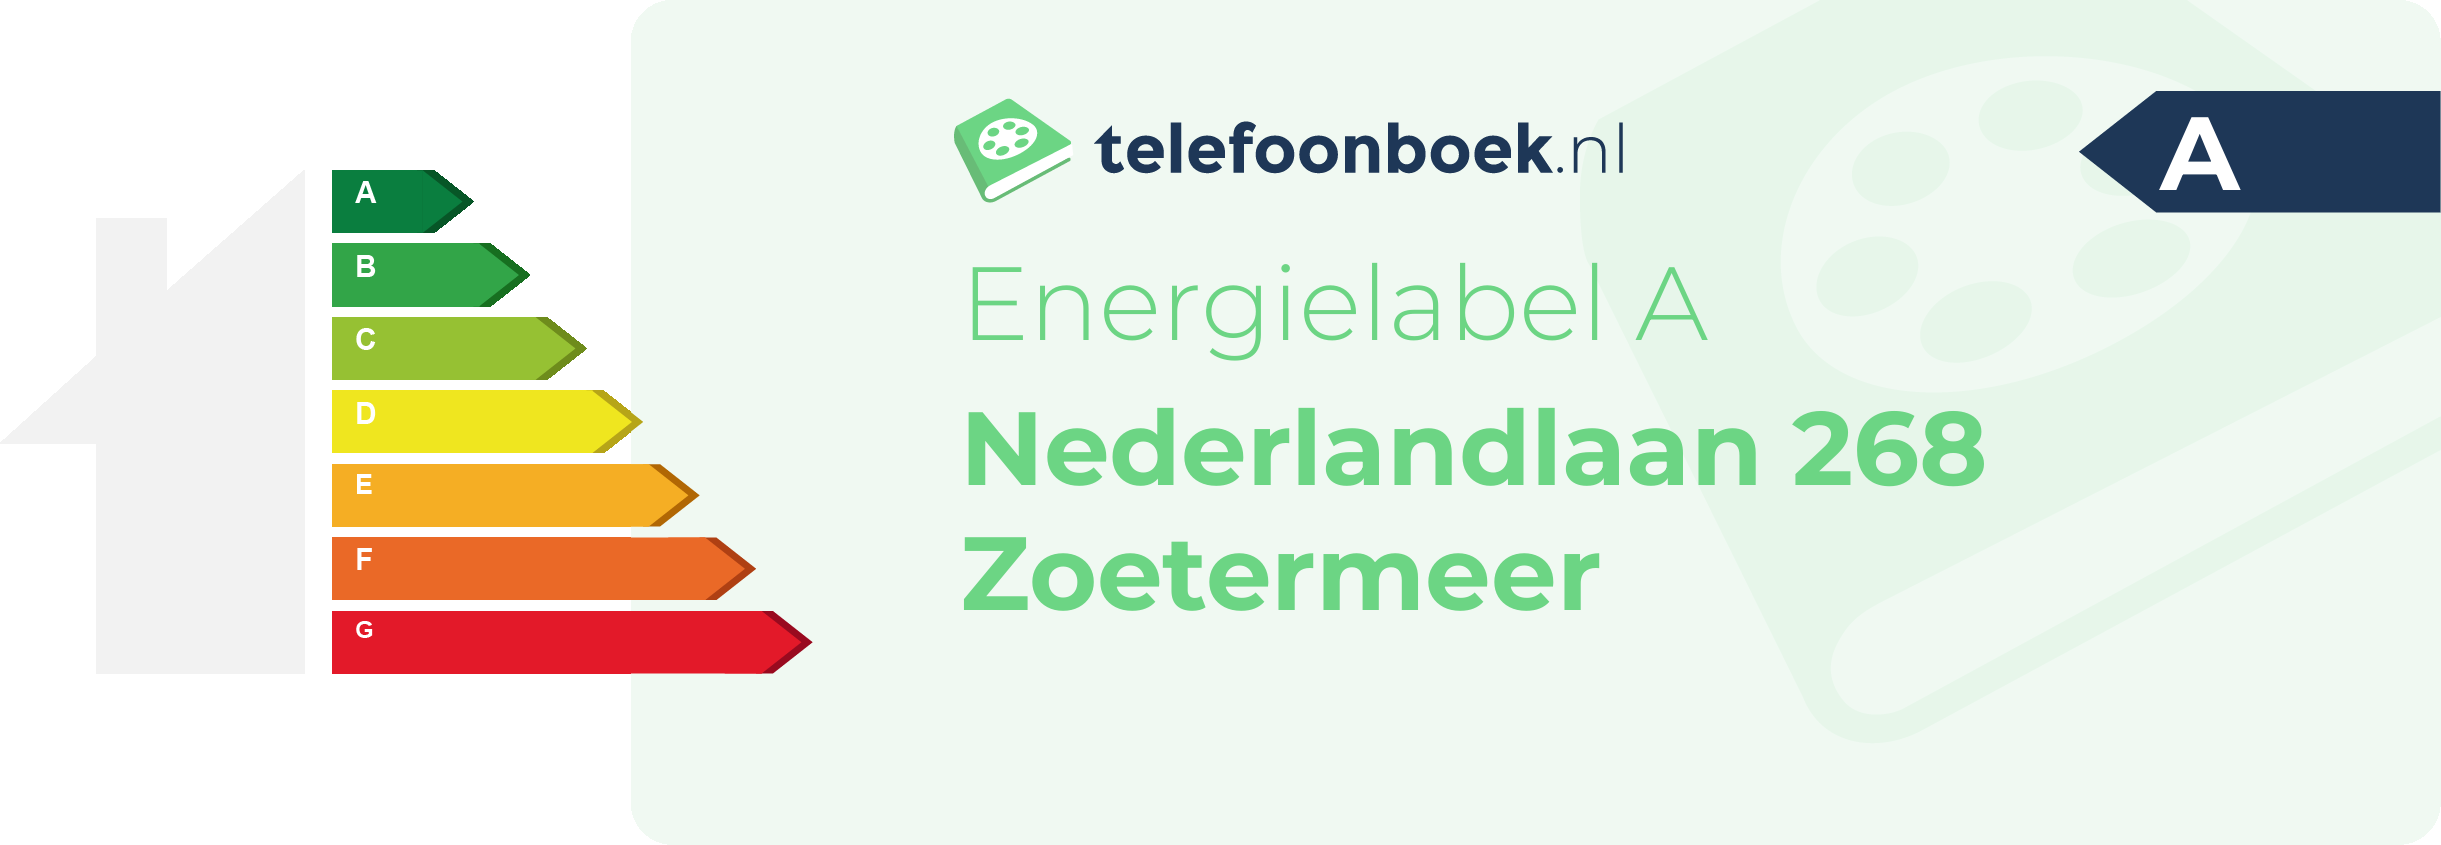 Energielabel Nederlandlaan 268 Zoetermeer